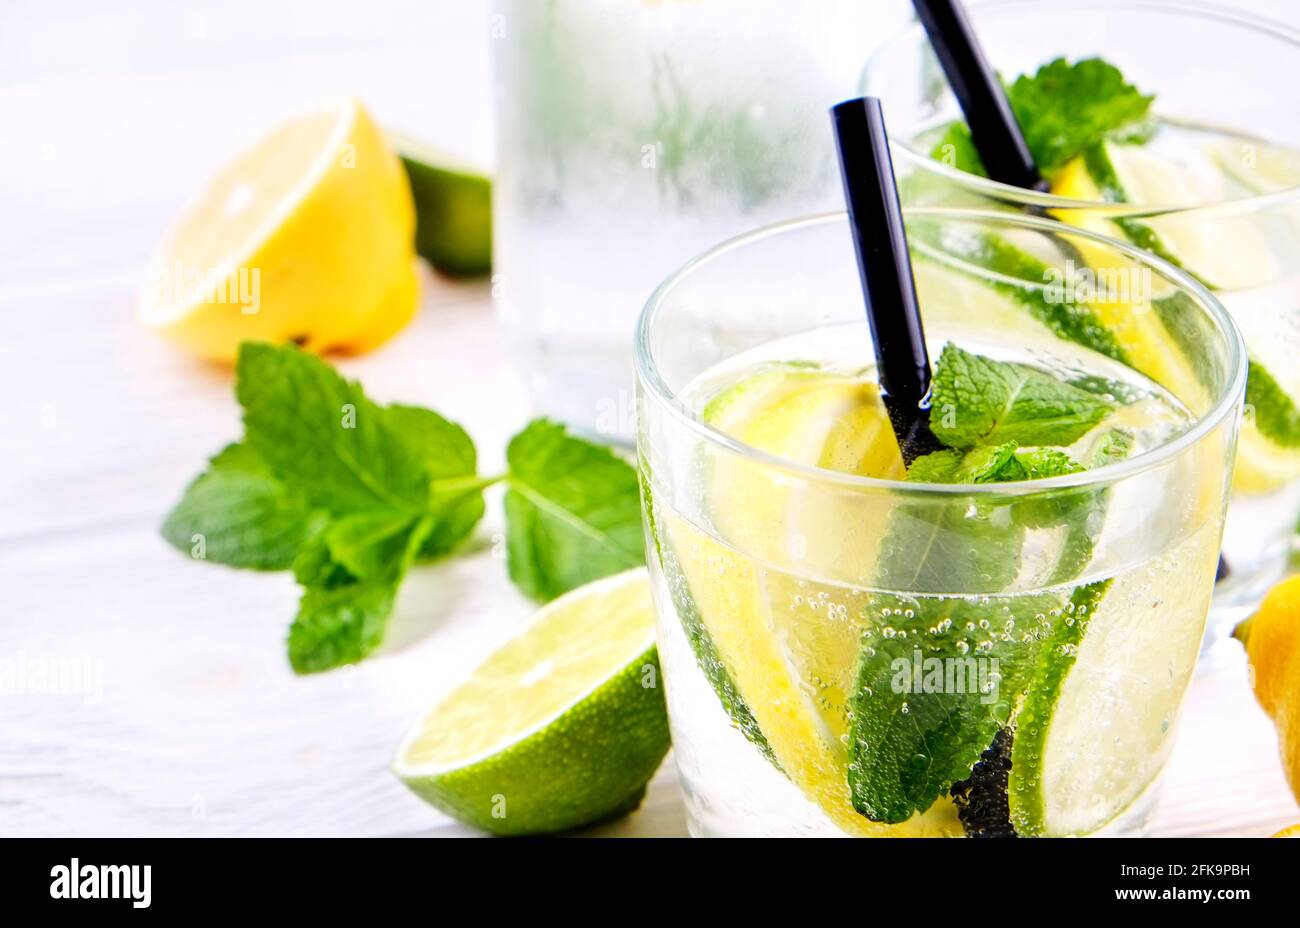 Vintage-Flasche mit zwei Gläsern erfrischender alkoholfreier Mojito-Limonade, Sekt mit Zitrone, Limettenscheiben, Minzblättern, Stroh, Holz Stockfoto